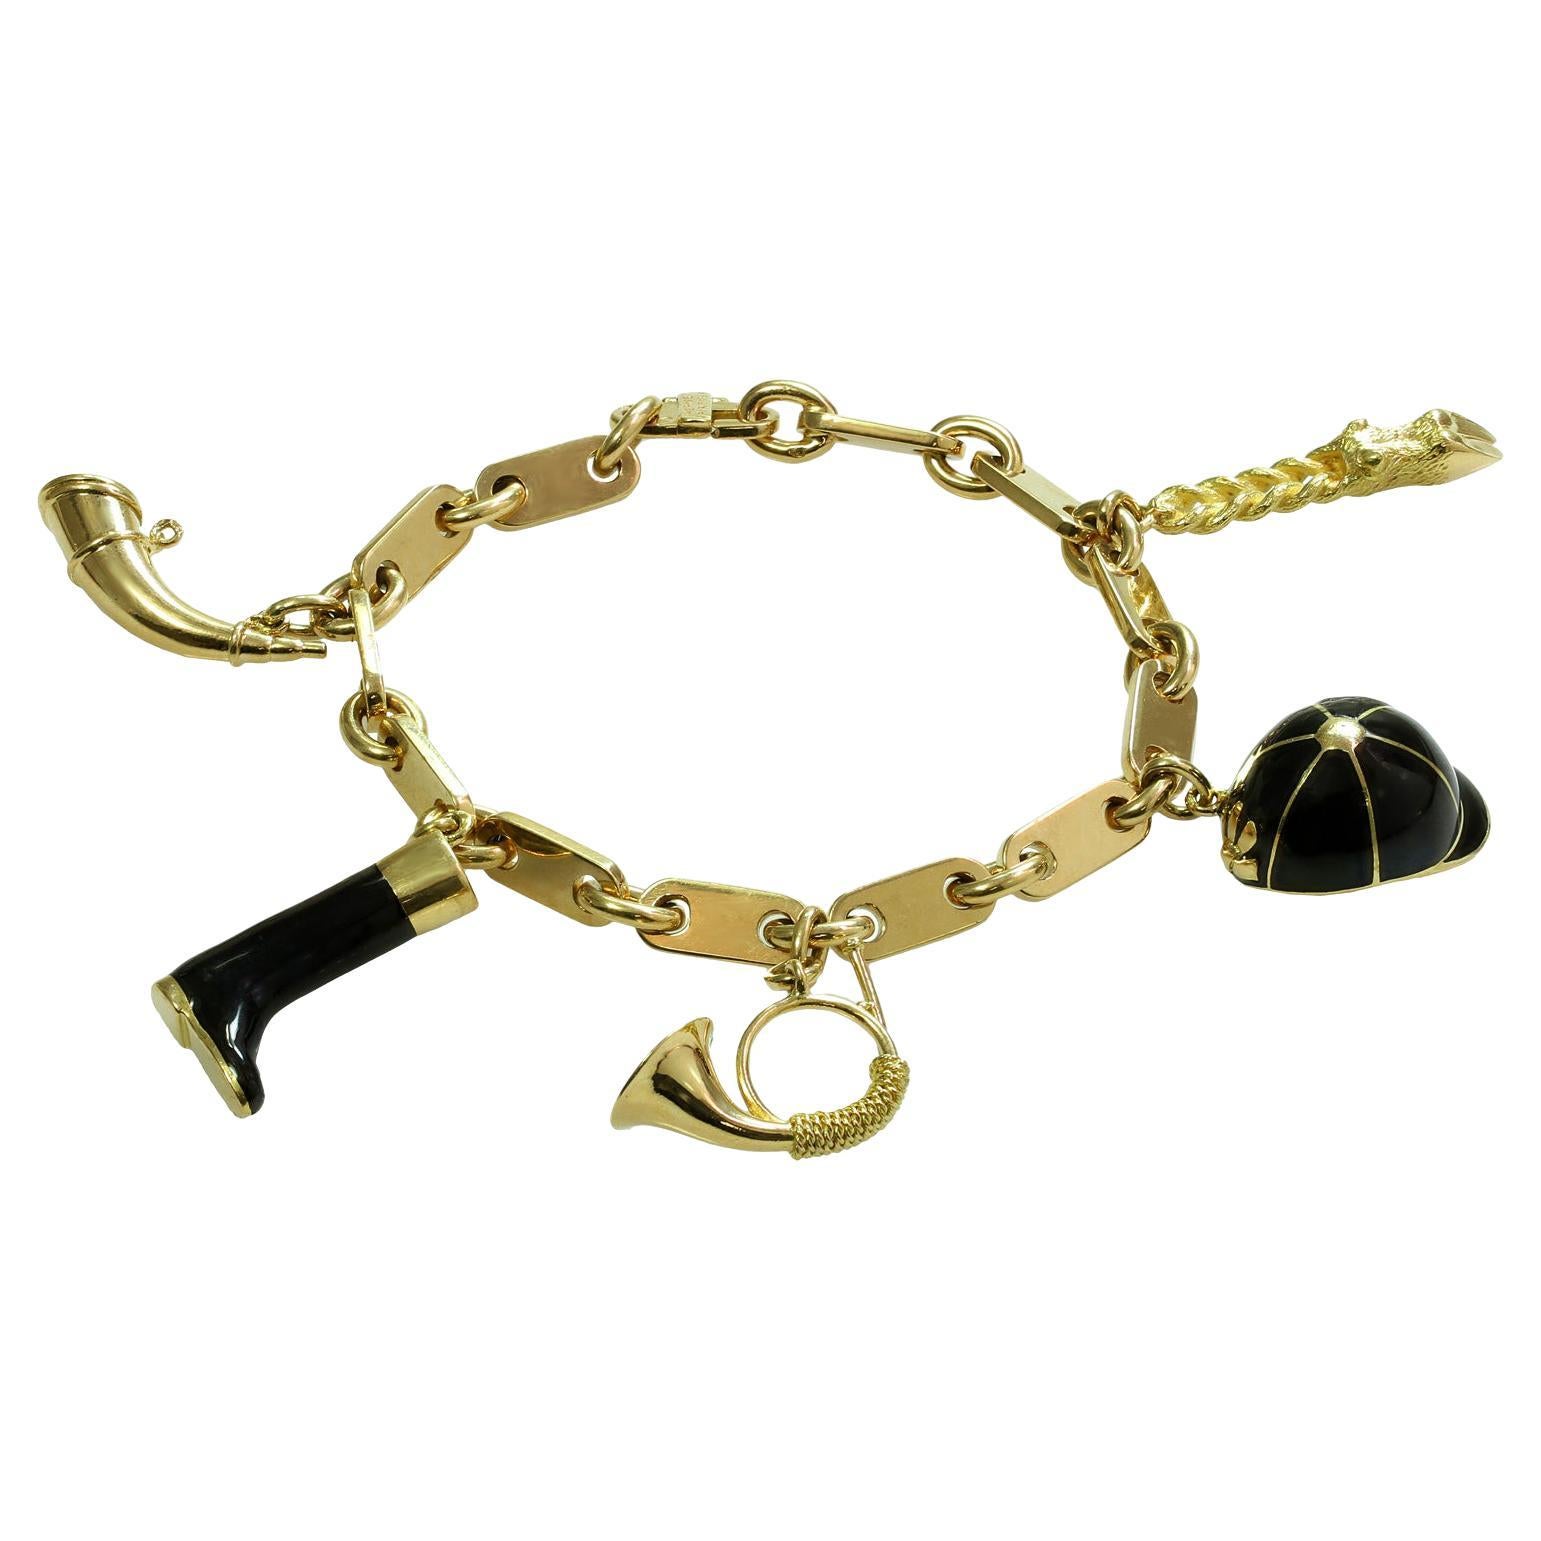 How much is Hermes bracelet in Paris?